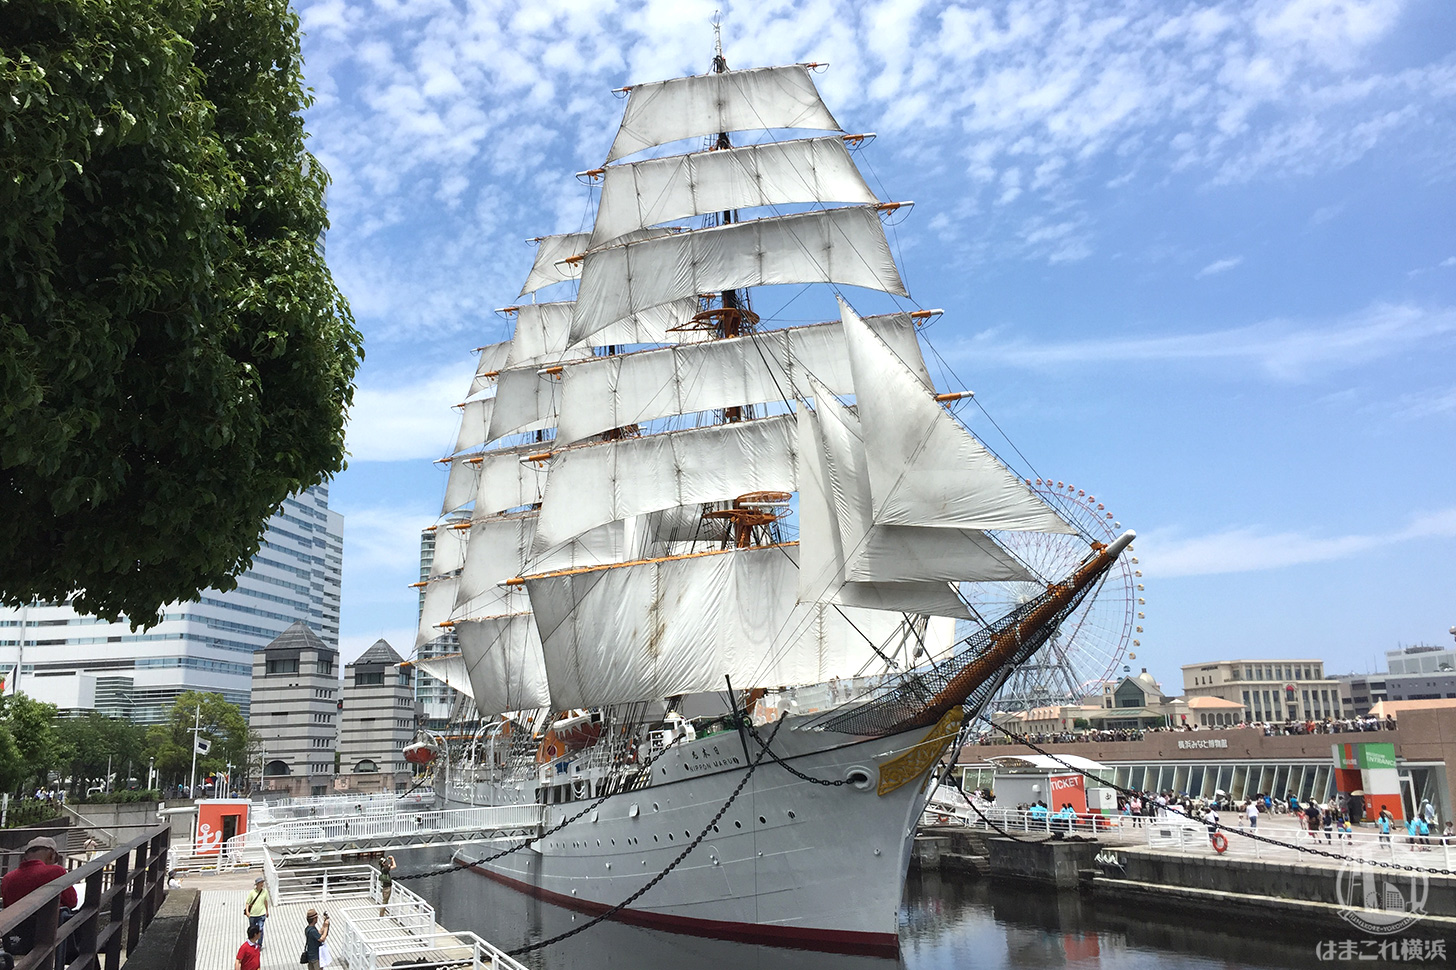 日本丸メモリアルパーク 帆船日本丸 横浜みなと博物館 はまこれ横浜